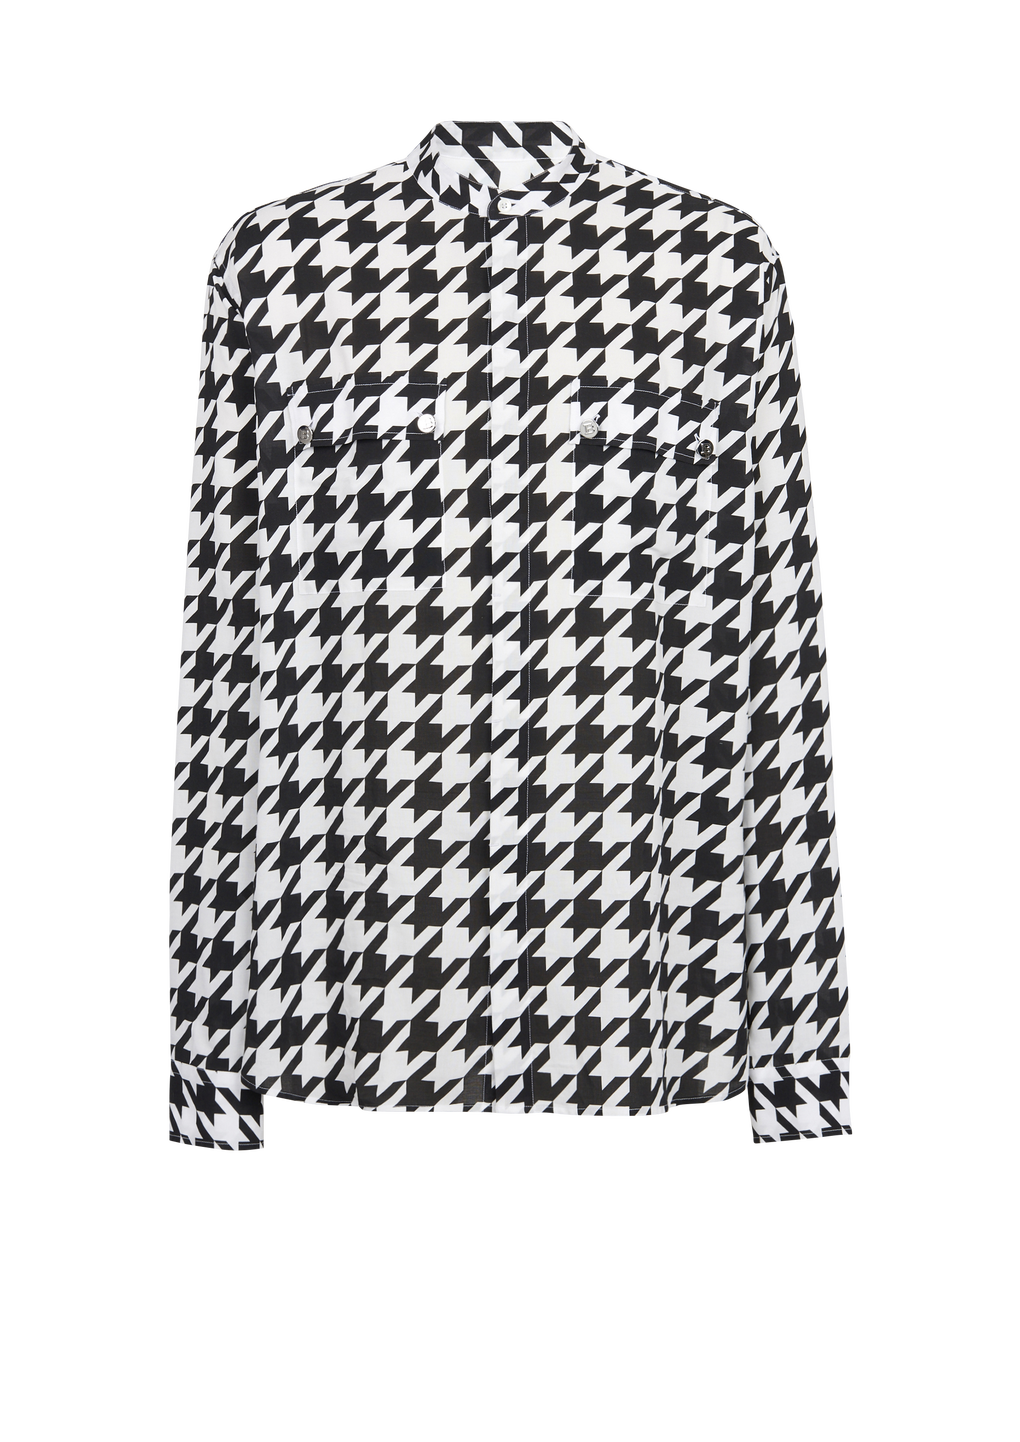 Camicia in cotone con stampa pied-de-poule, nero, hi-res